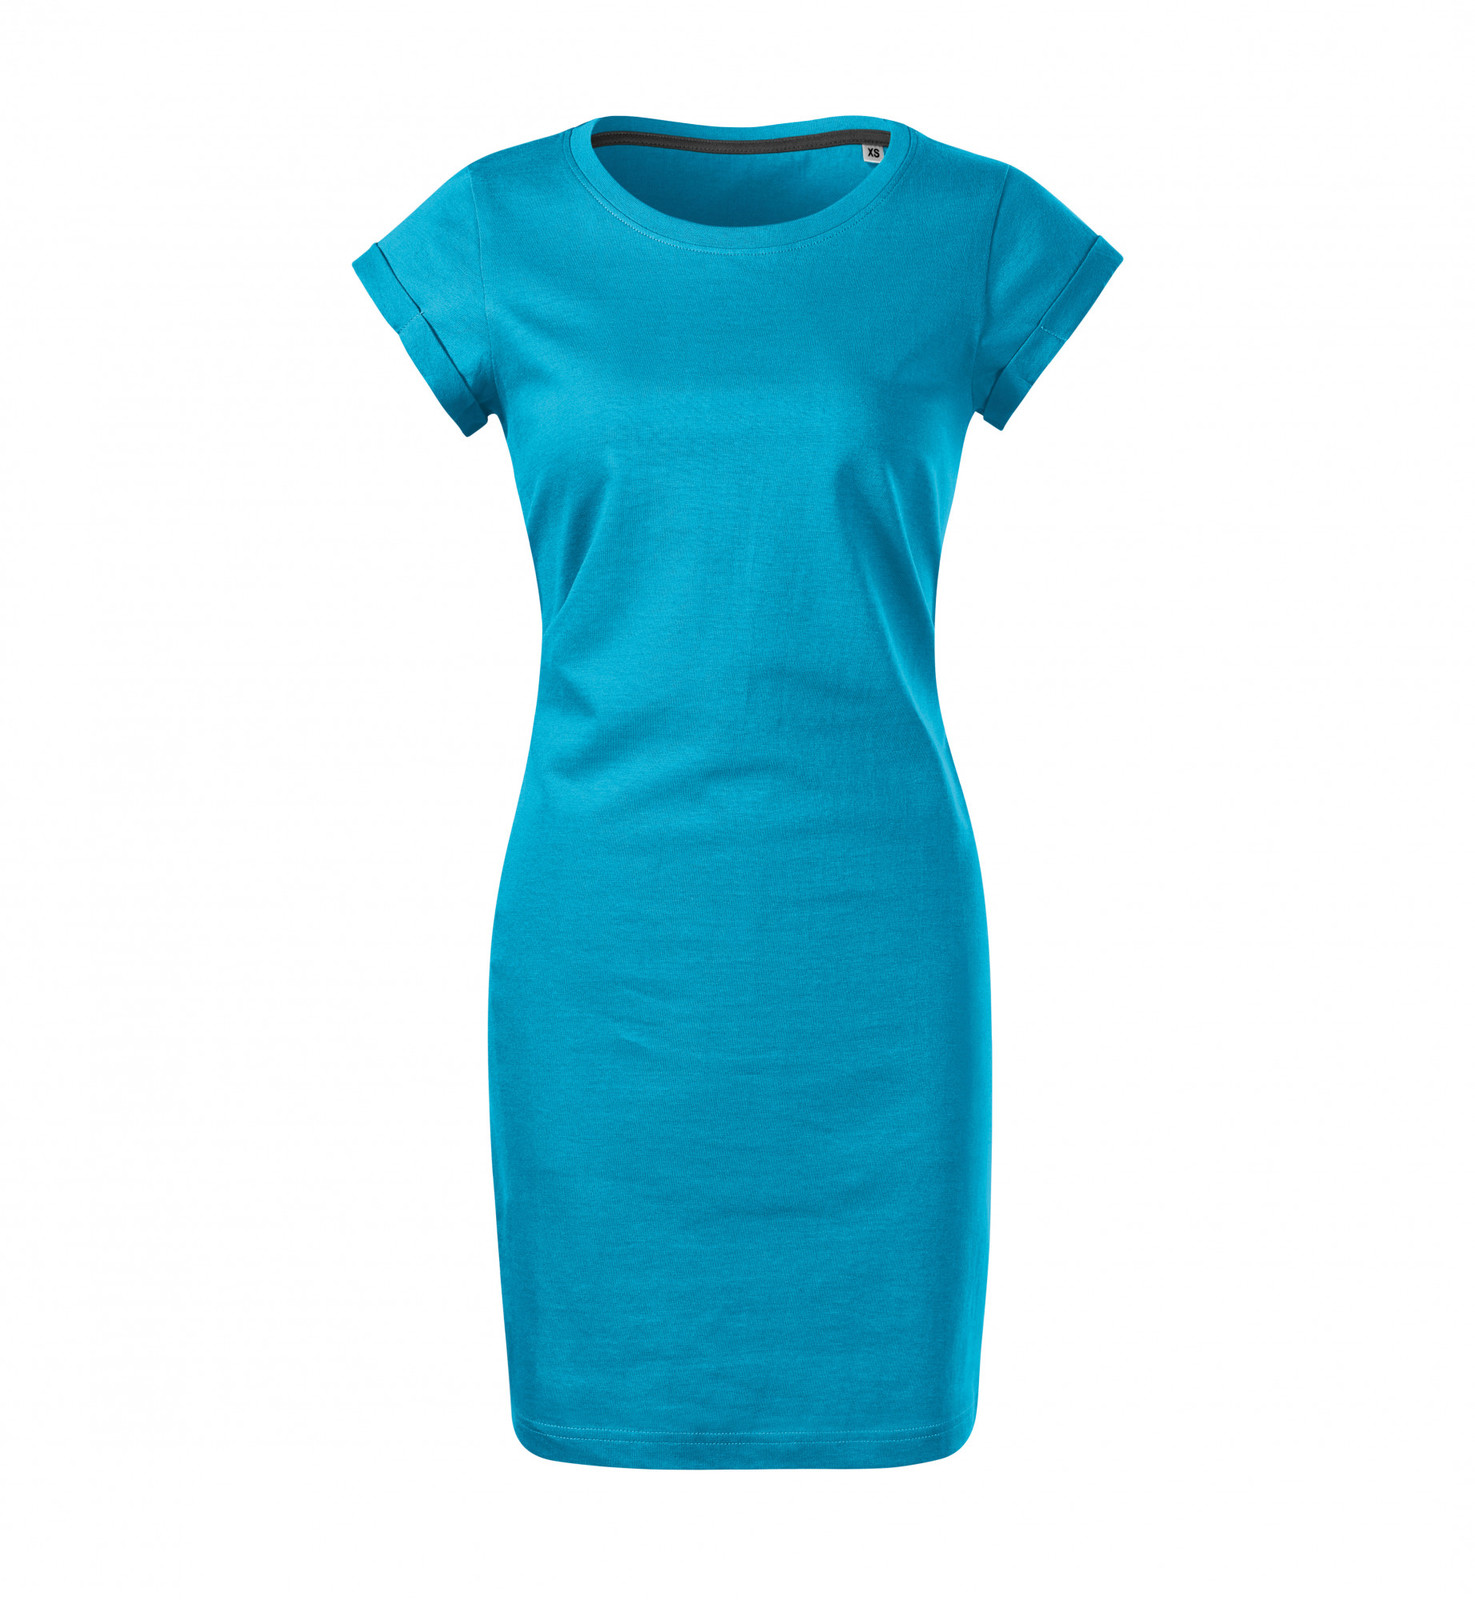 Dámske šaty Malfini Freedom 178 - veľkosť: S, farba: tyrkysová